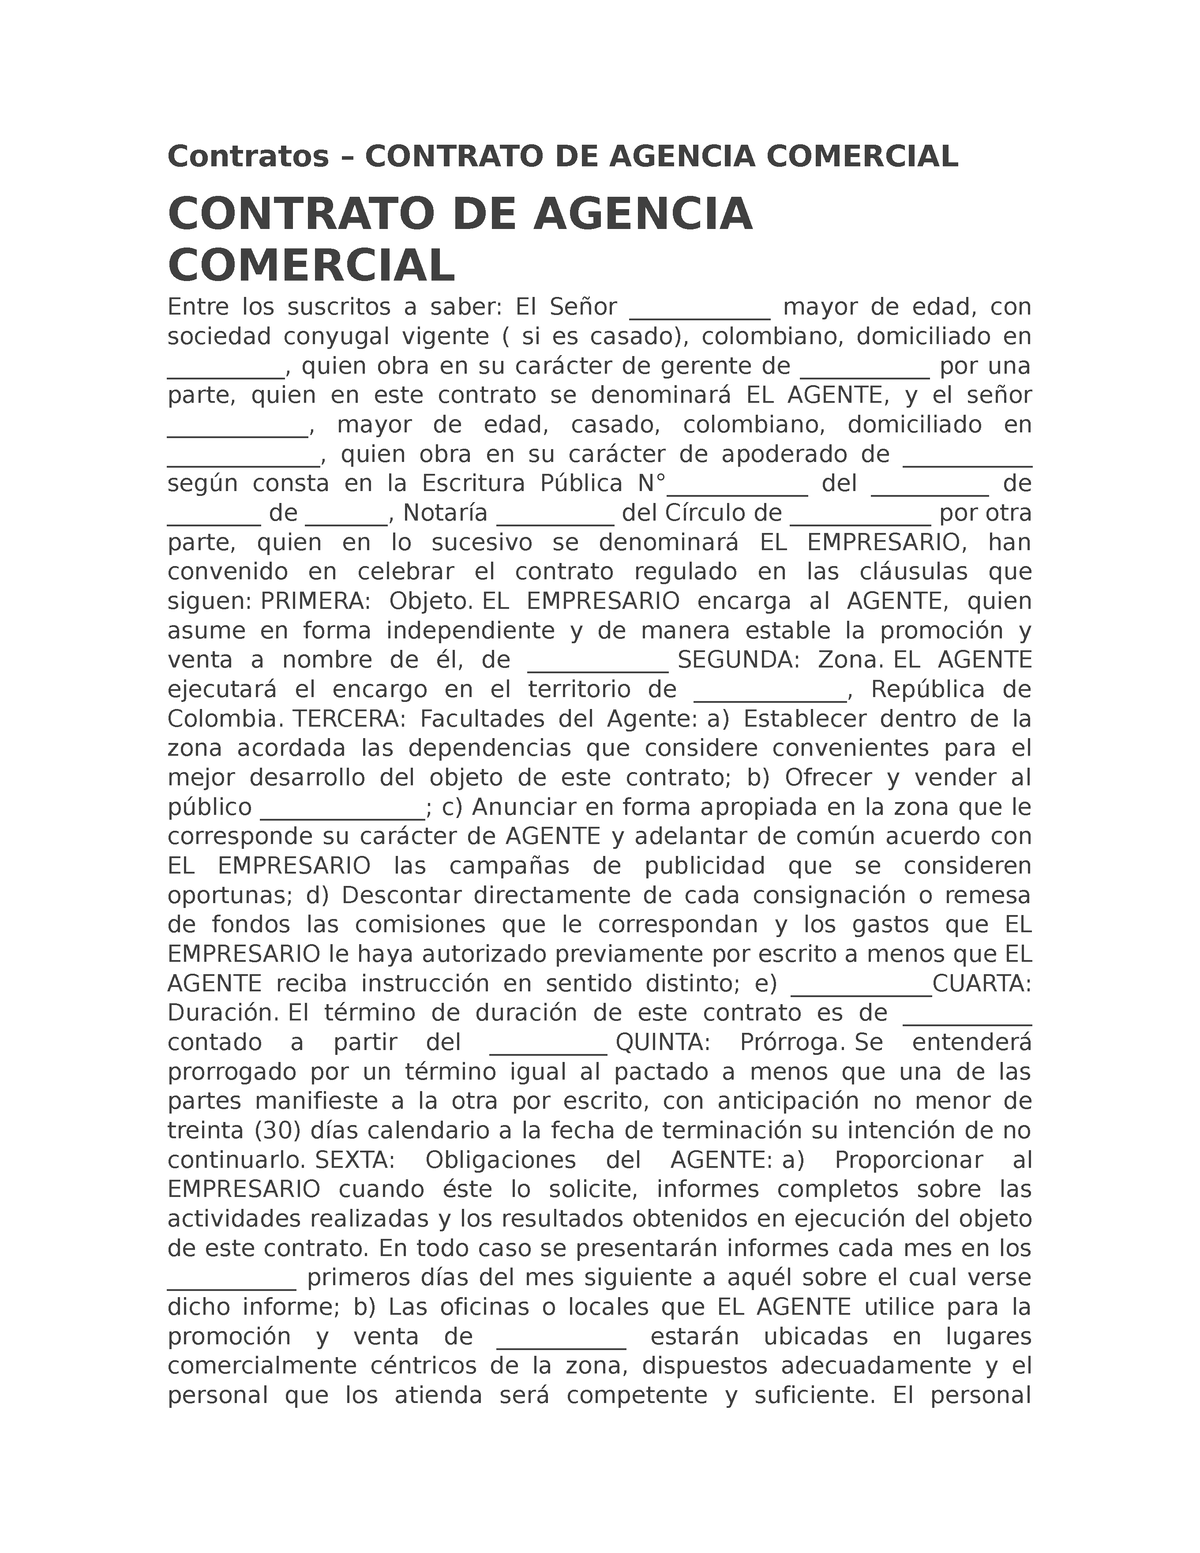 Contratos De Agencia Comercial Contratos Contrato De Agencia Comercial Contrato De Agencia 5634